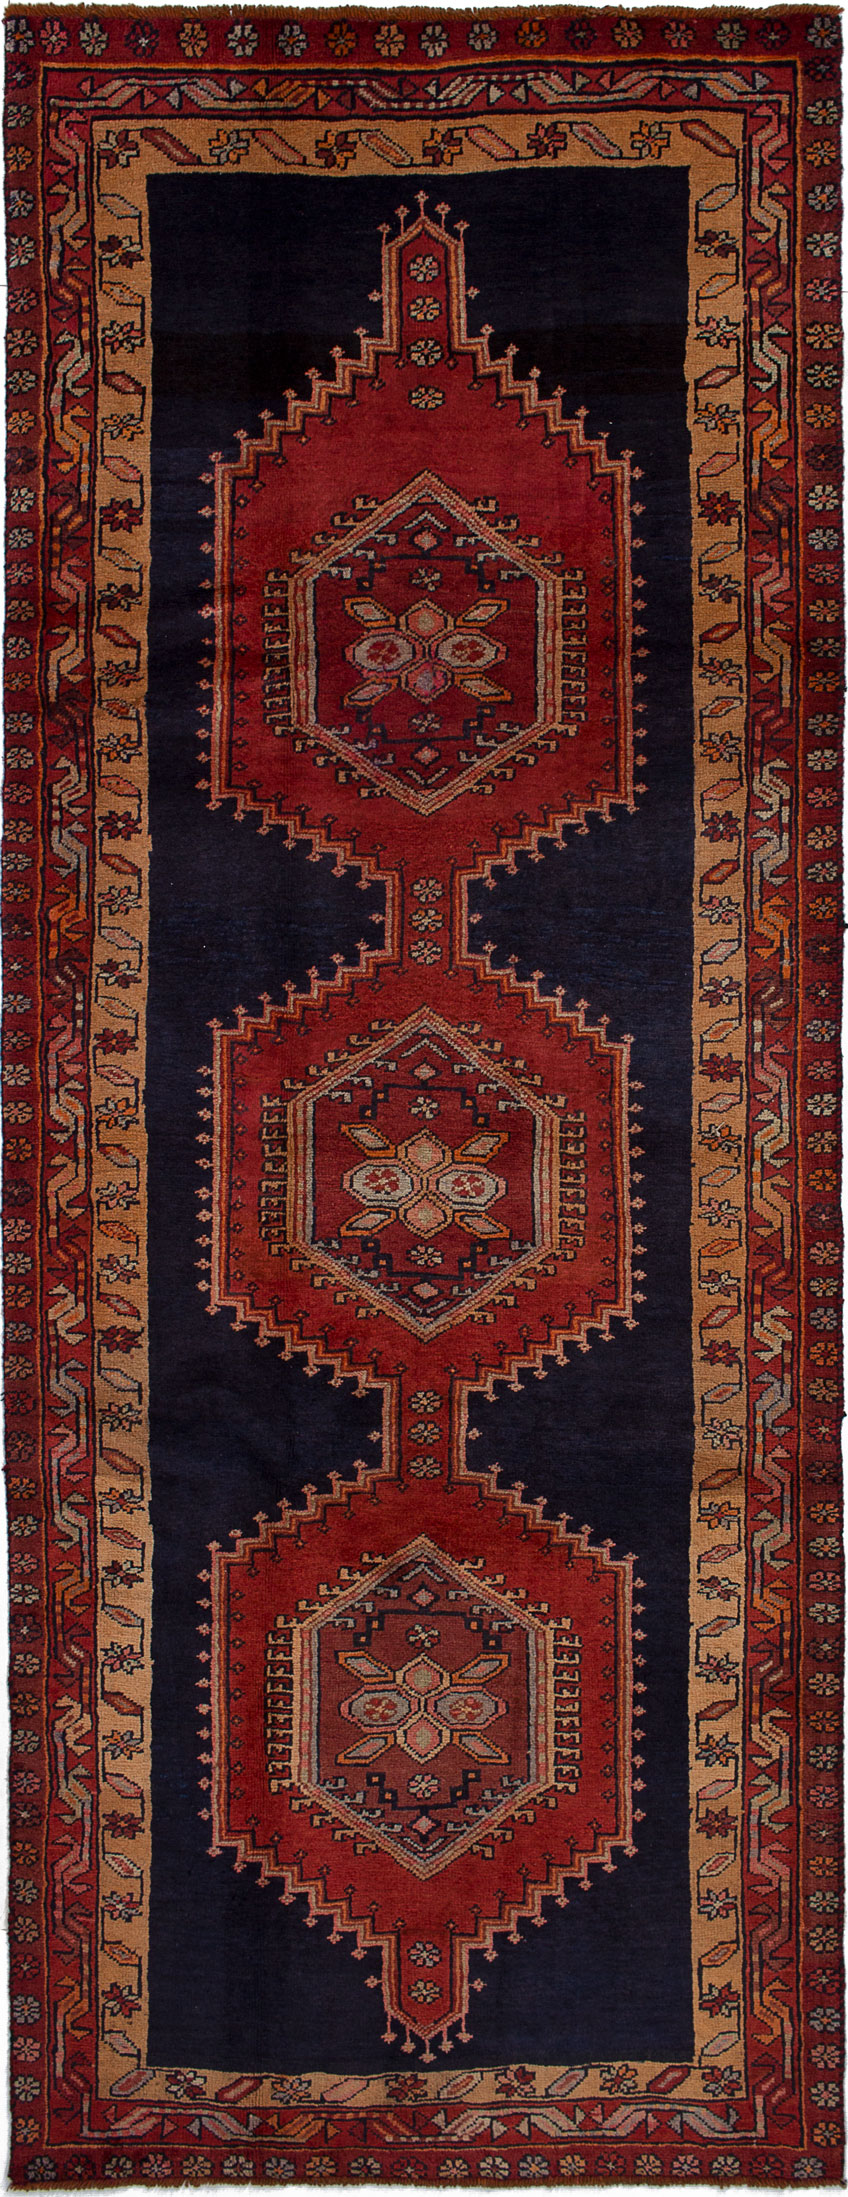 Hand-knotted Ardabil Dark Copper, Dark Navy Wool Rug 4'1" x 10'11" Size: 4'1" x 10'11"  